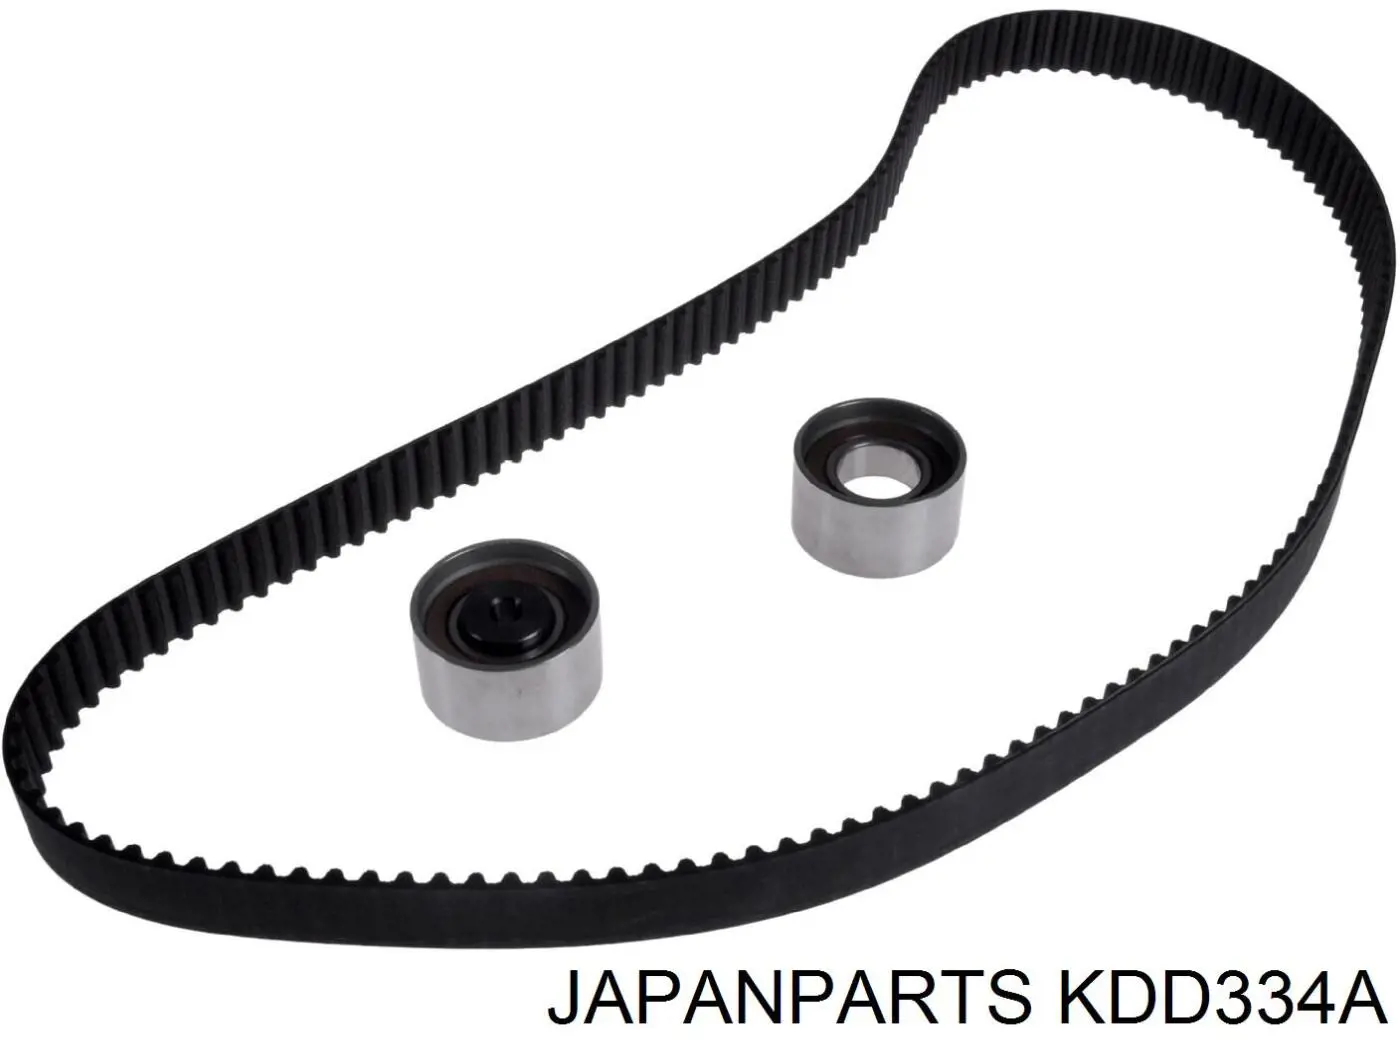 KDD334A Japan Parts комплект грм